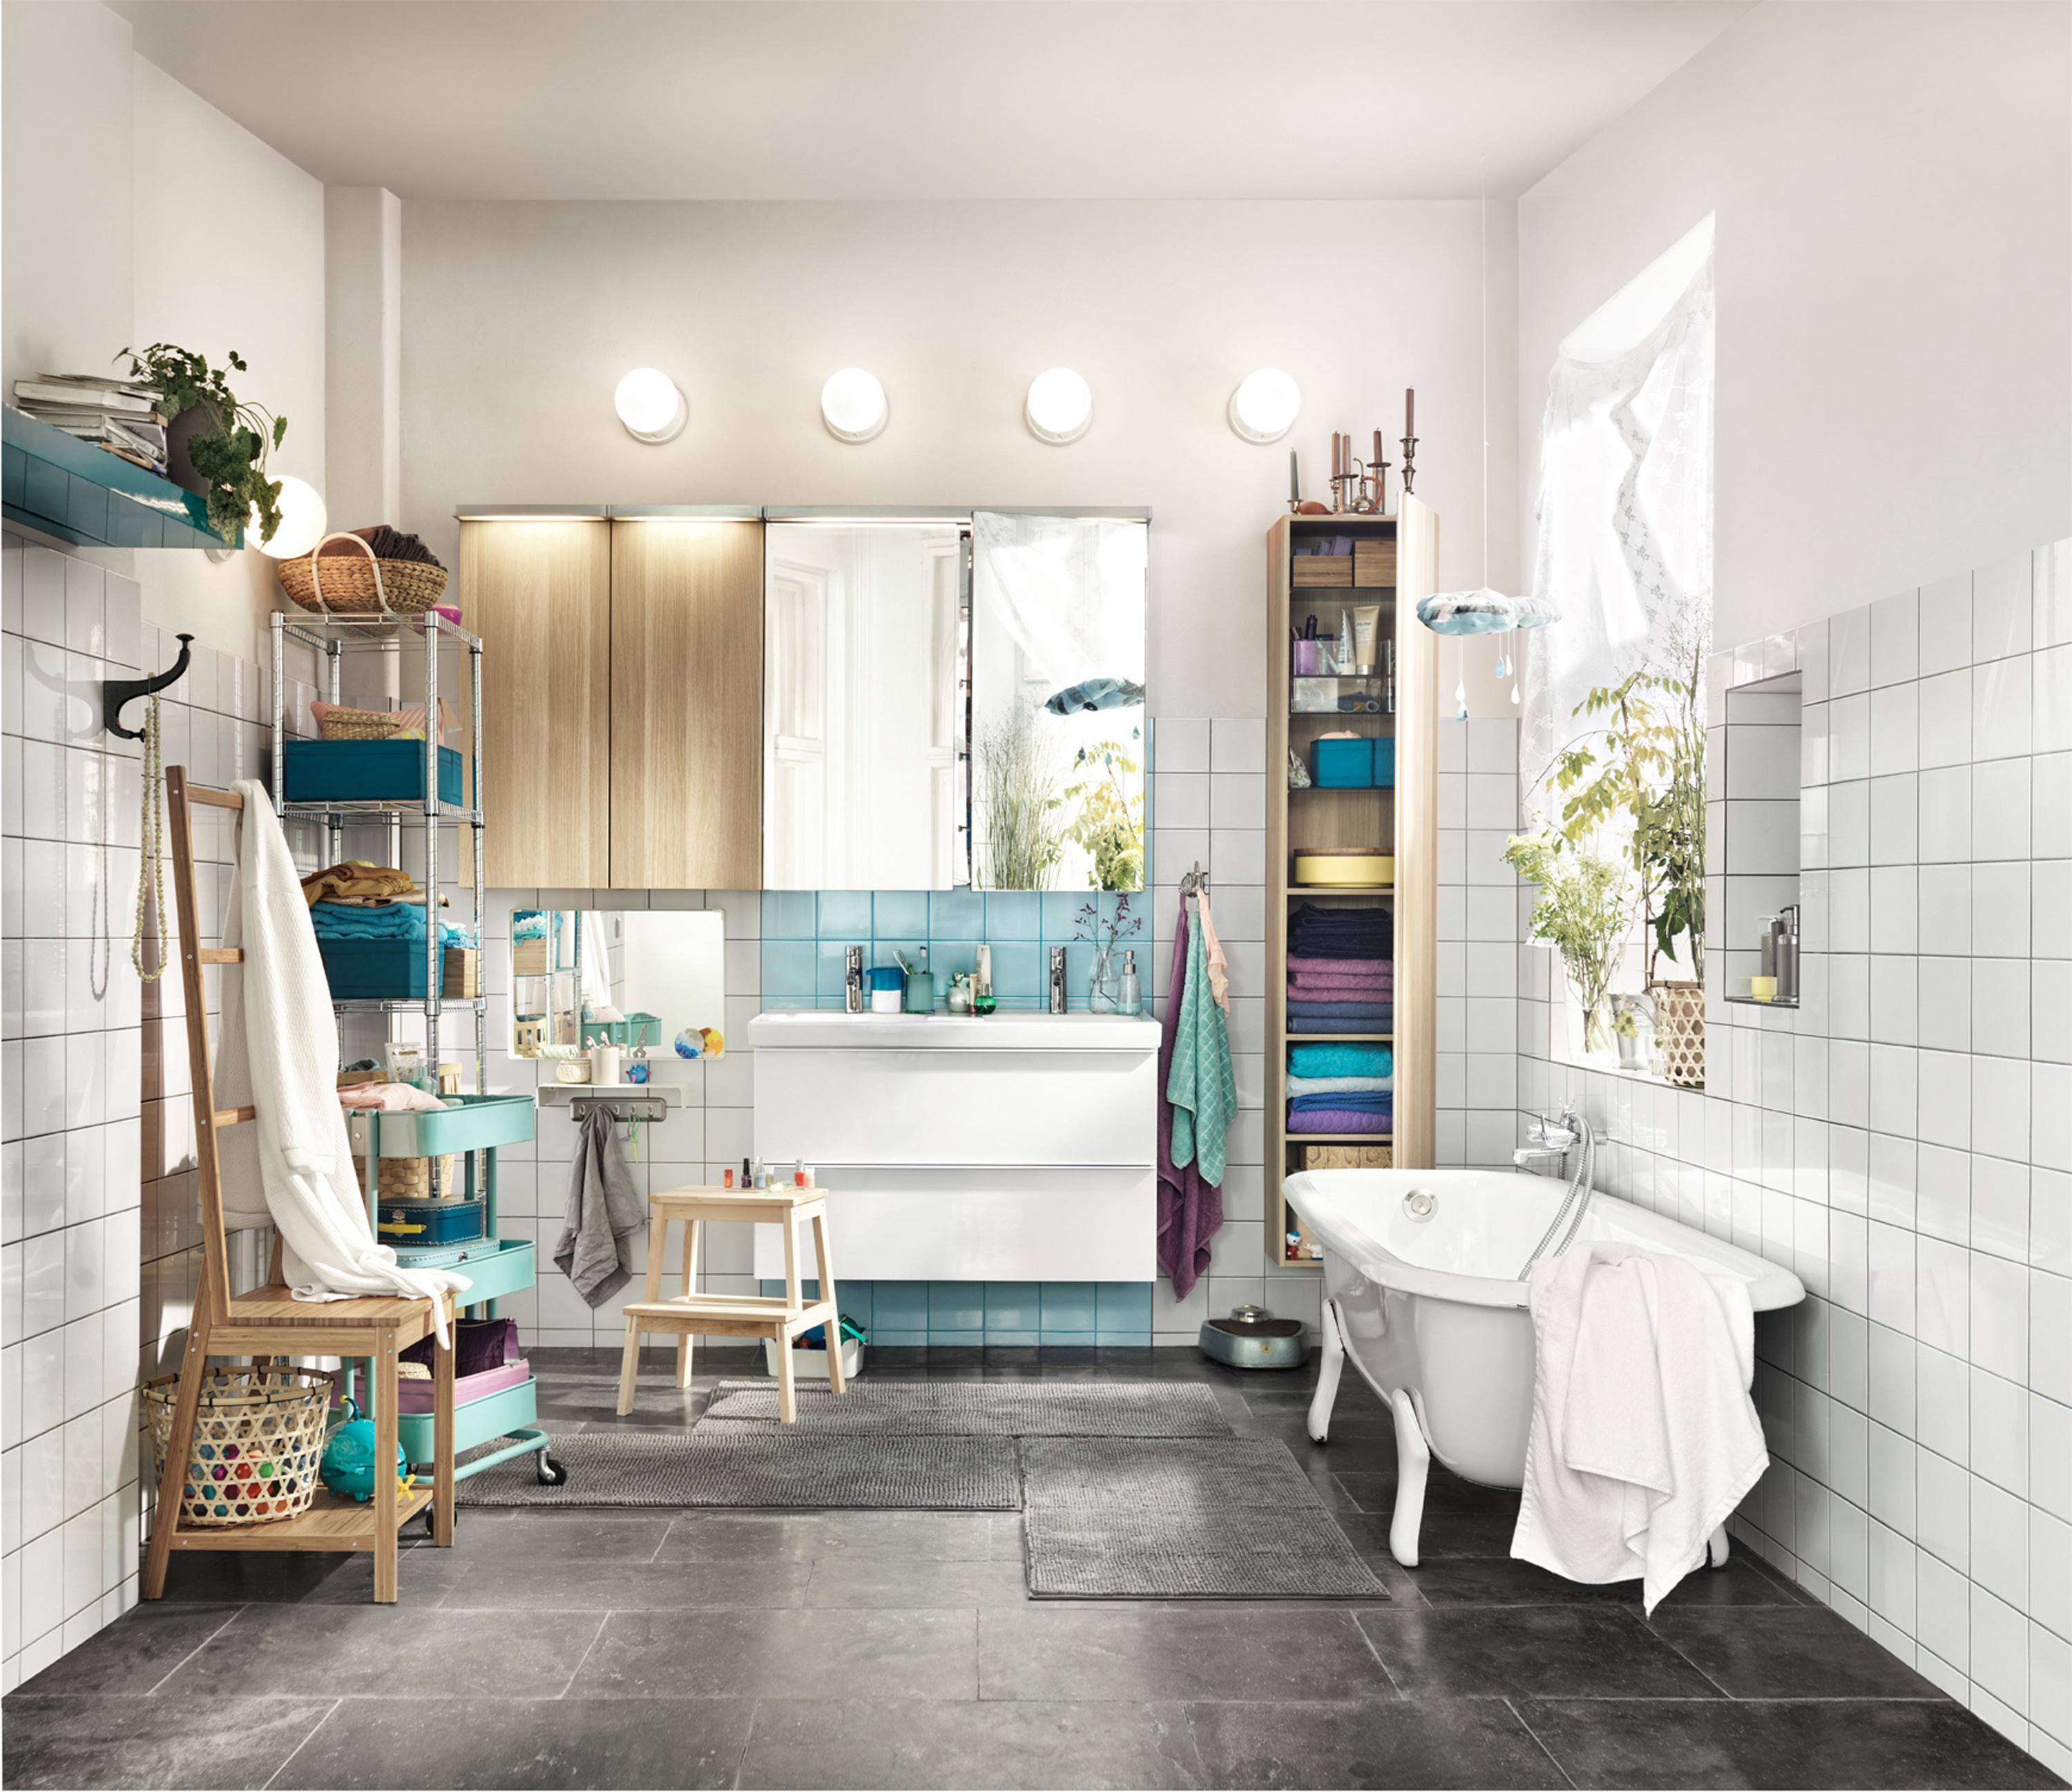 Badezimmer mit farbigen Accessoires gestalten #badewanne #waschtisch #ikea #freistehendebadewanne #spiegelschrank #badezimmergestalten #badbeleuchtung ©Inter IKEA Systems B.V.